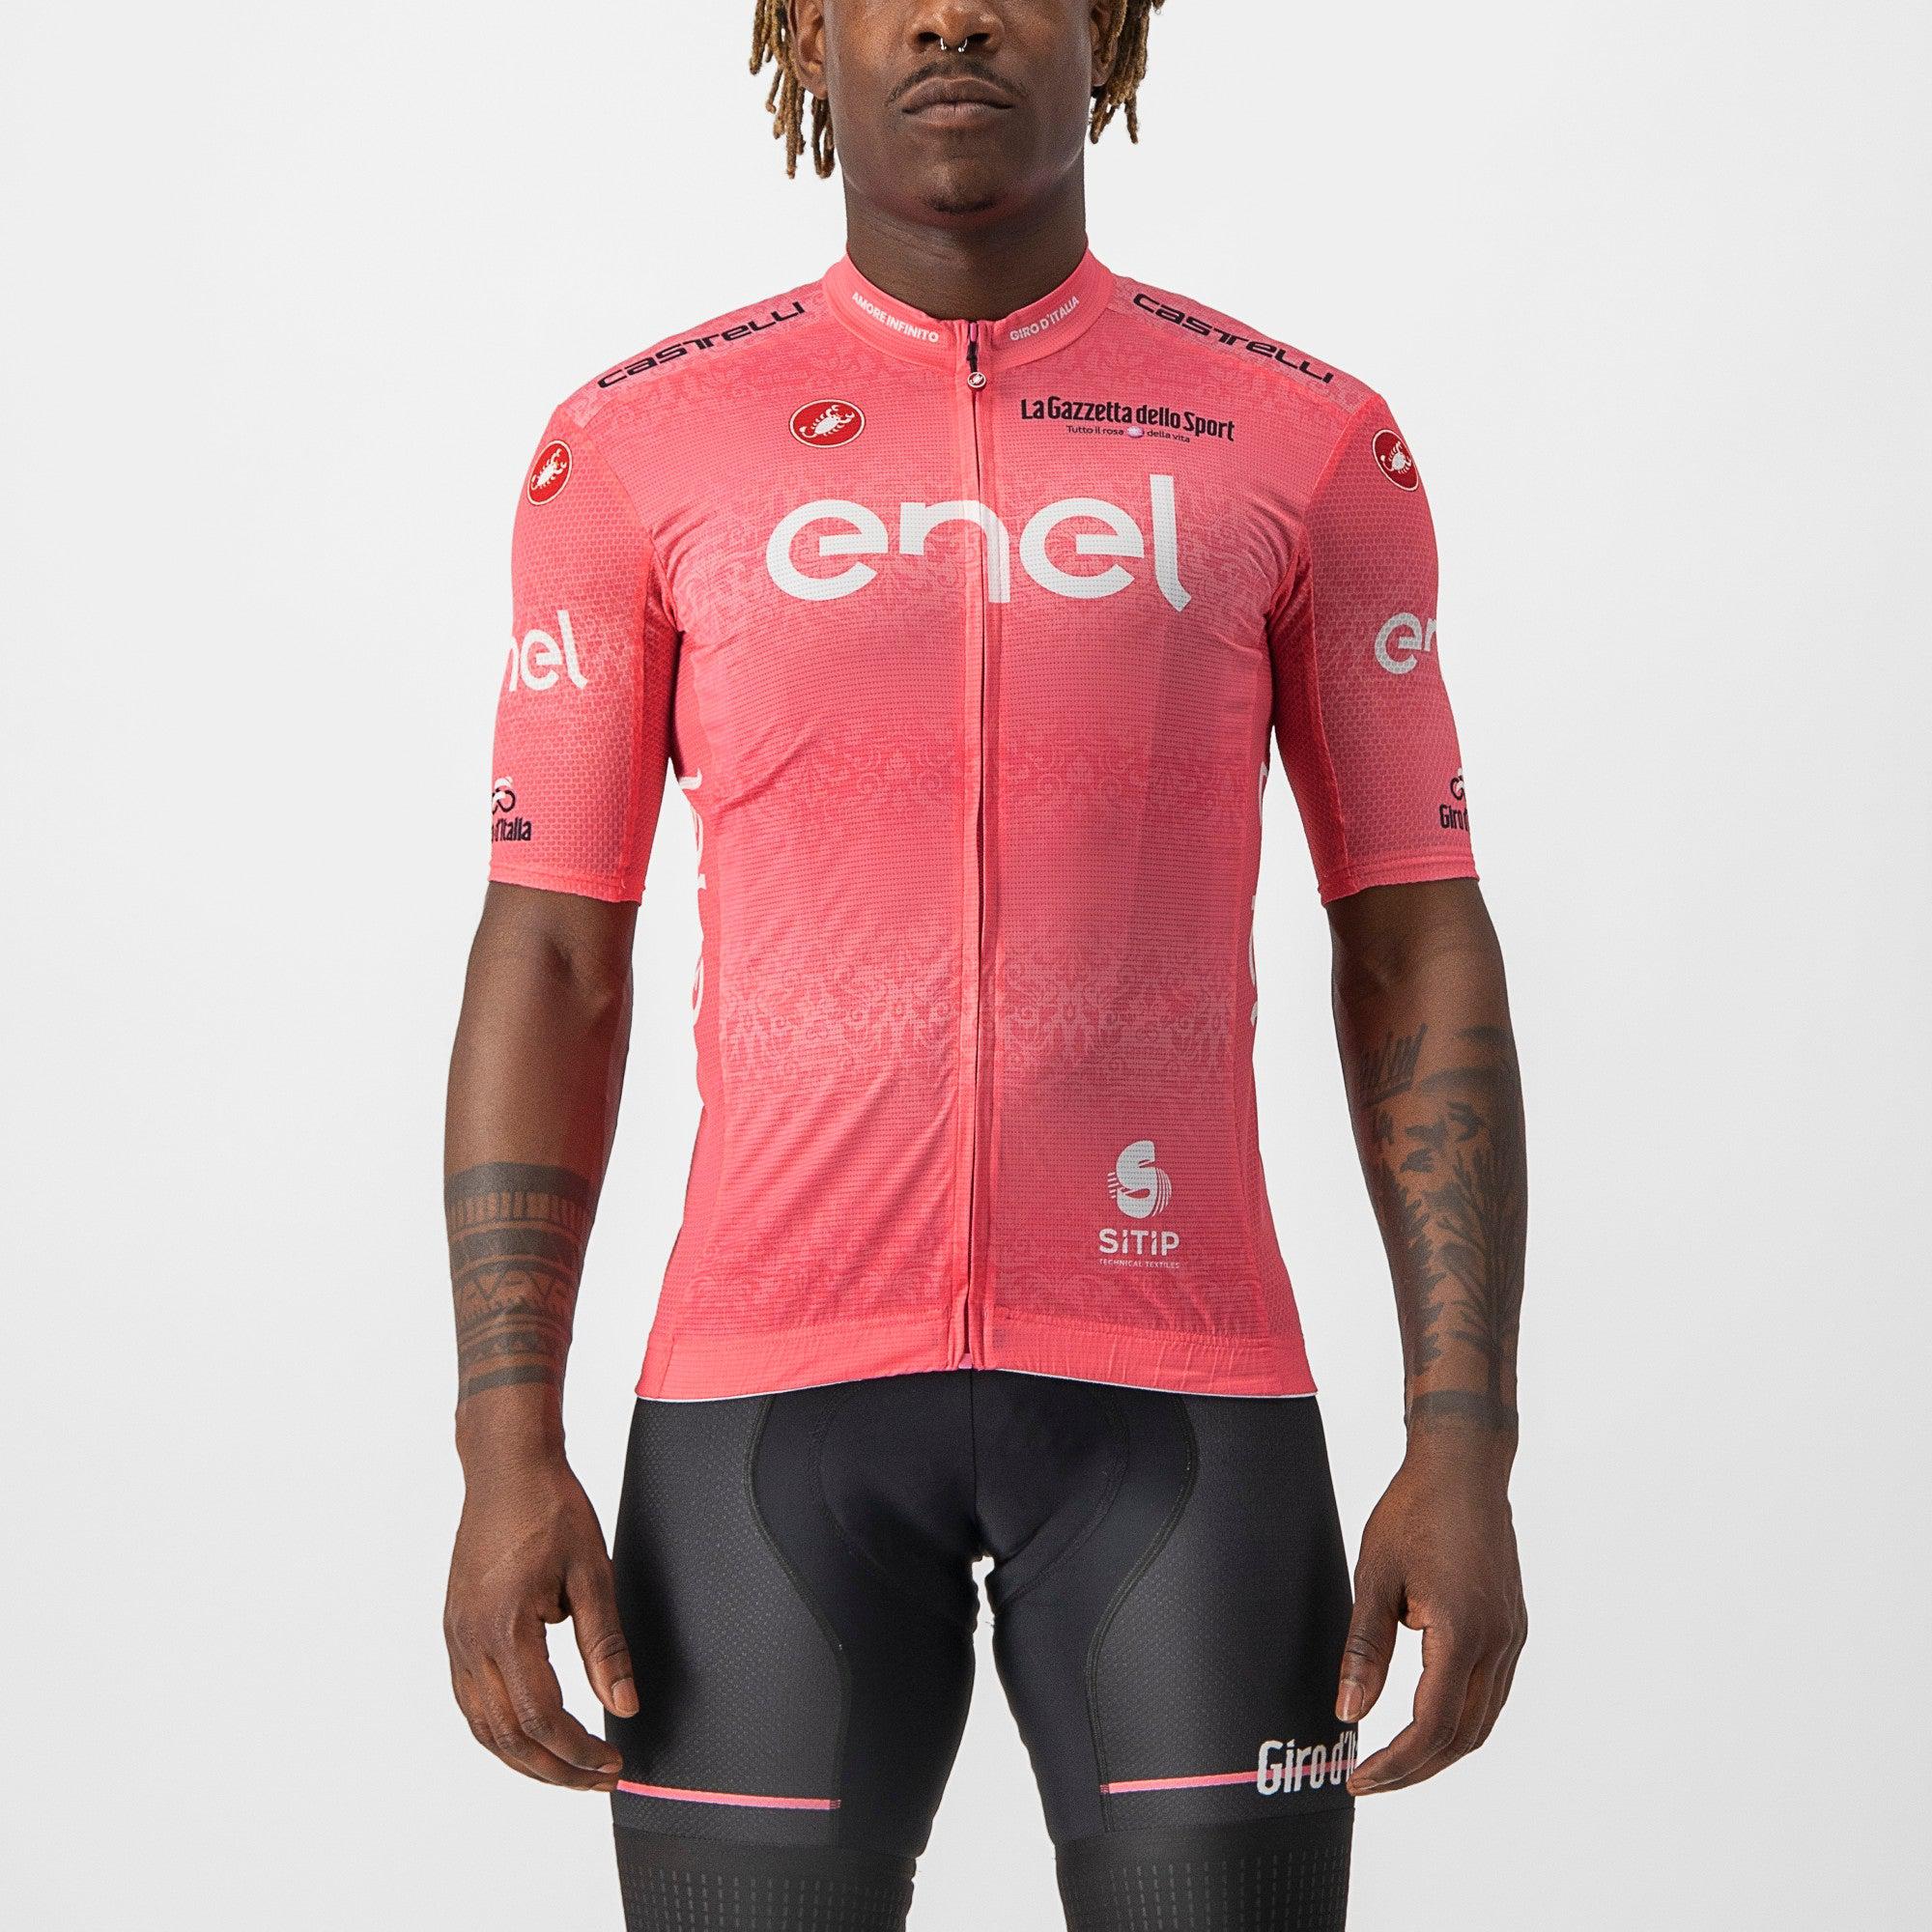 
                CASTELLI Cyklistický dres s krátkým rukávem - GIRO D\'ITALIA 2022 - růžová
            